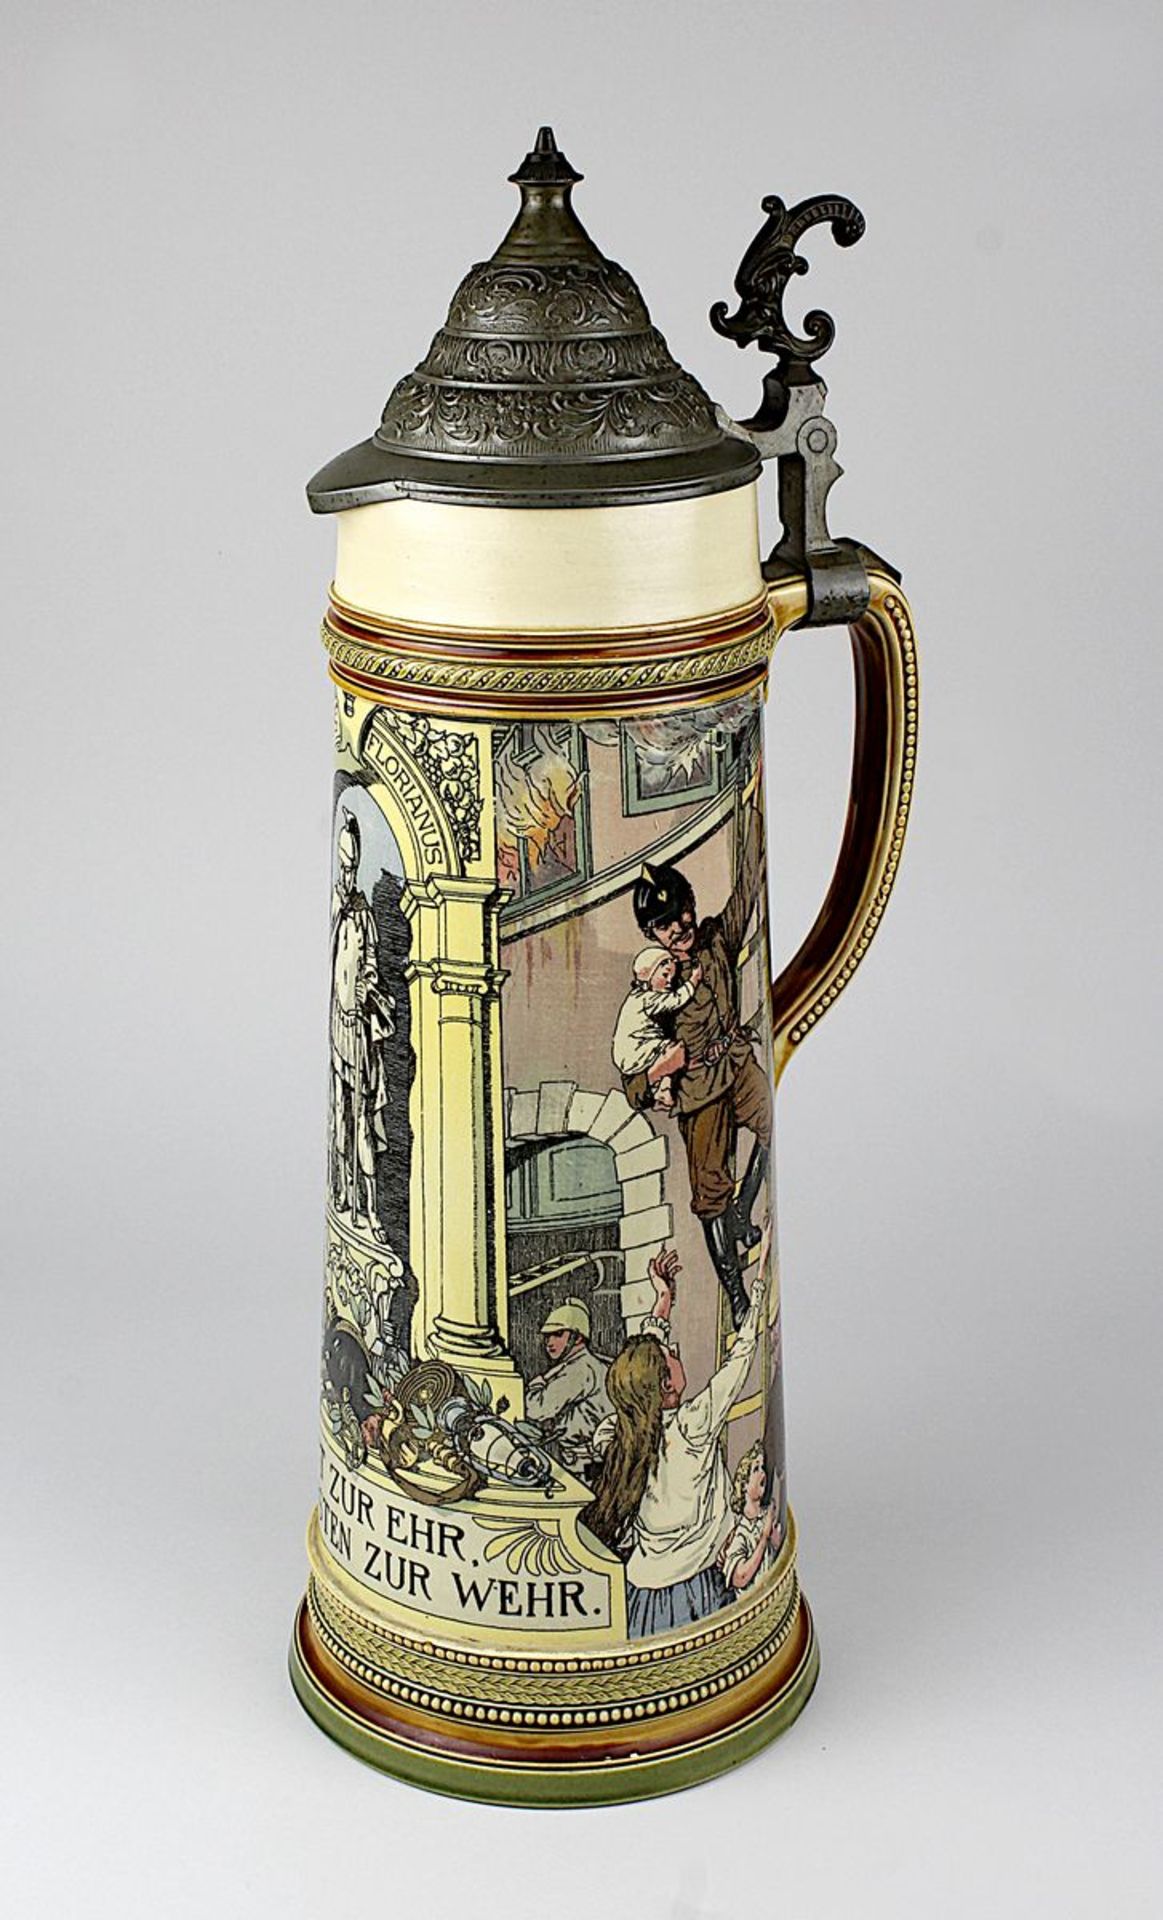 Gr. V&B Mettlach-Feuerwehr-Krug, 1899, Keramik, mit reliefierten Rändern und Griff, Wandung mit